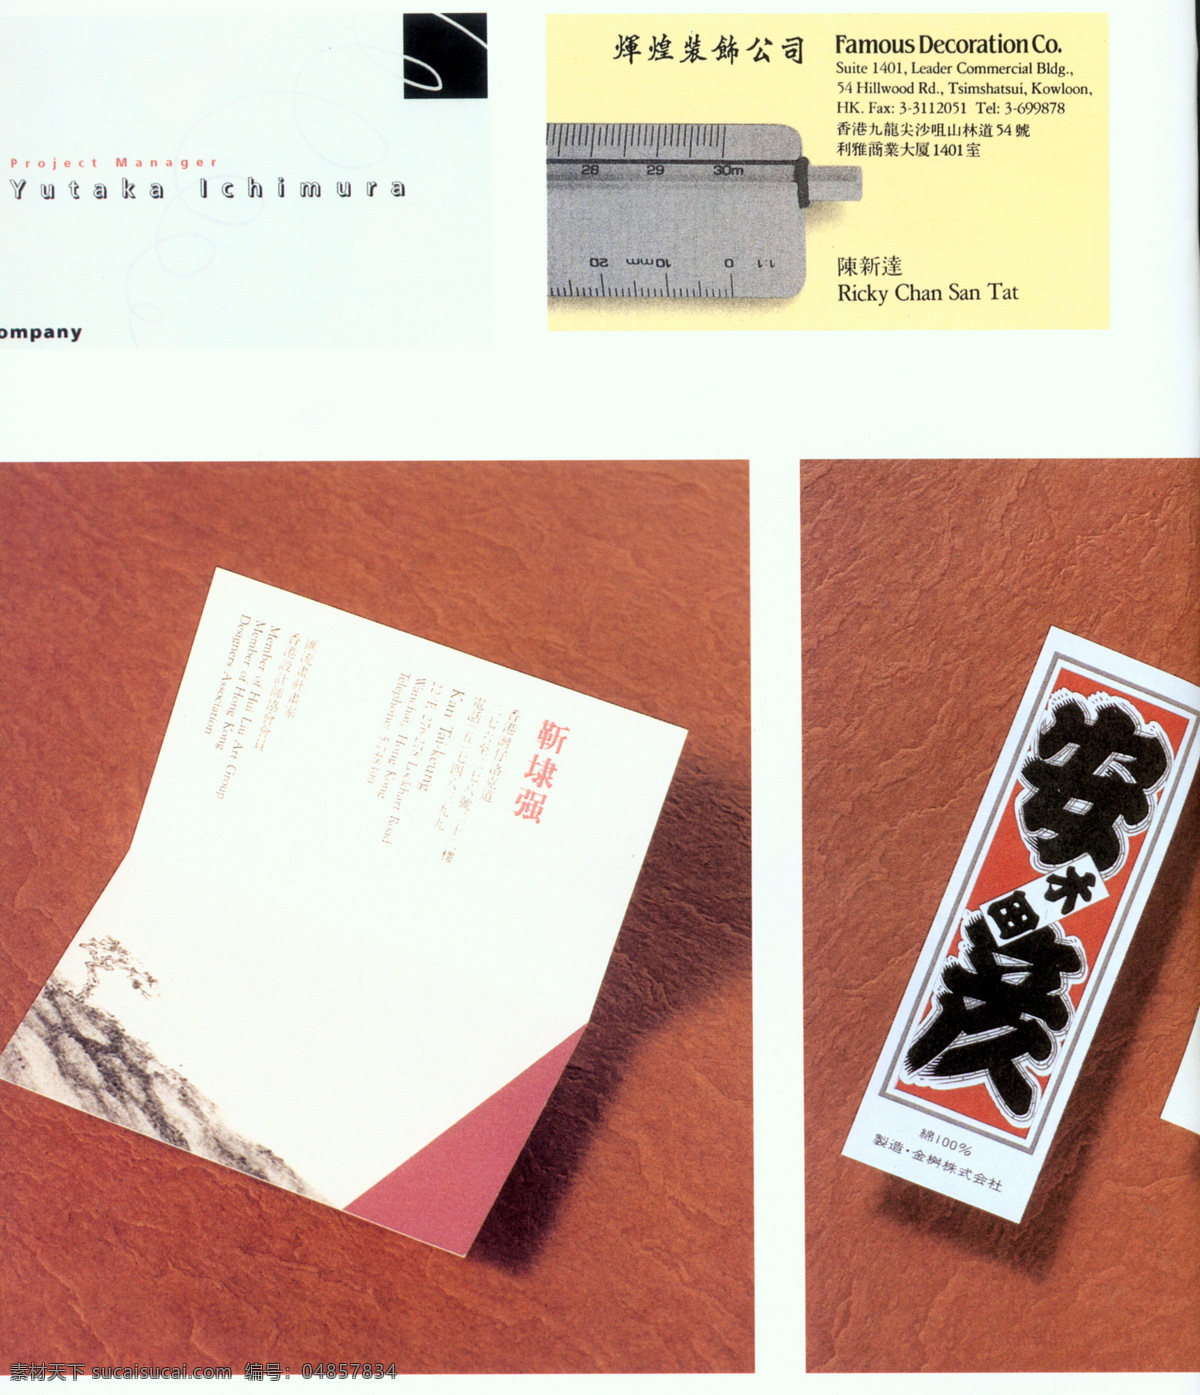 名片设计 名片 国际 商业 卡片 设计素材 名片欣赏 平面设计 白色